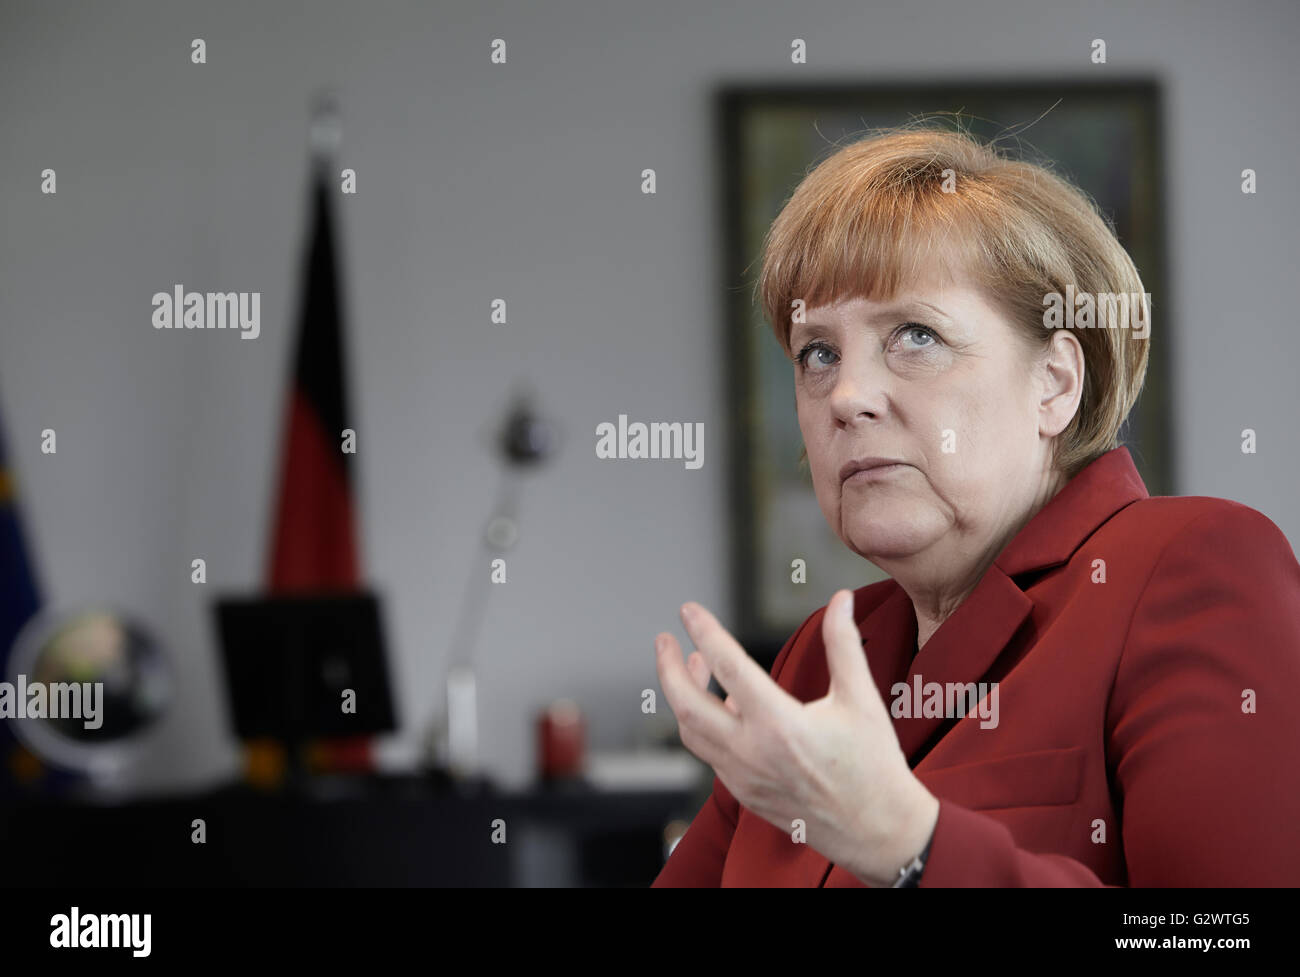 27.05.2013, Berlin, Berlin, Germania - Cancelliere Angela Merkel (CDU) gesti durante un colloquio presso la cancelleria federale a Berlino. 0PA130527D011CAROEX.JPG - non per la vendita in G E R M A N Y, A U S T R I A, S W I T Z e R L A N D [modello di rilascio: NO, la proprietà di rilascio: NO, (c) caro agenzia fotografica / Ponizak, http://www.caro-images.com, info@carofoto.pl - Qualsiasi uso di questa immagine è soggetto a royalty!] Foto Stock